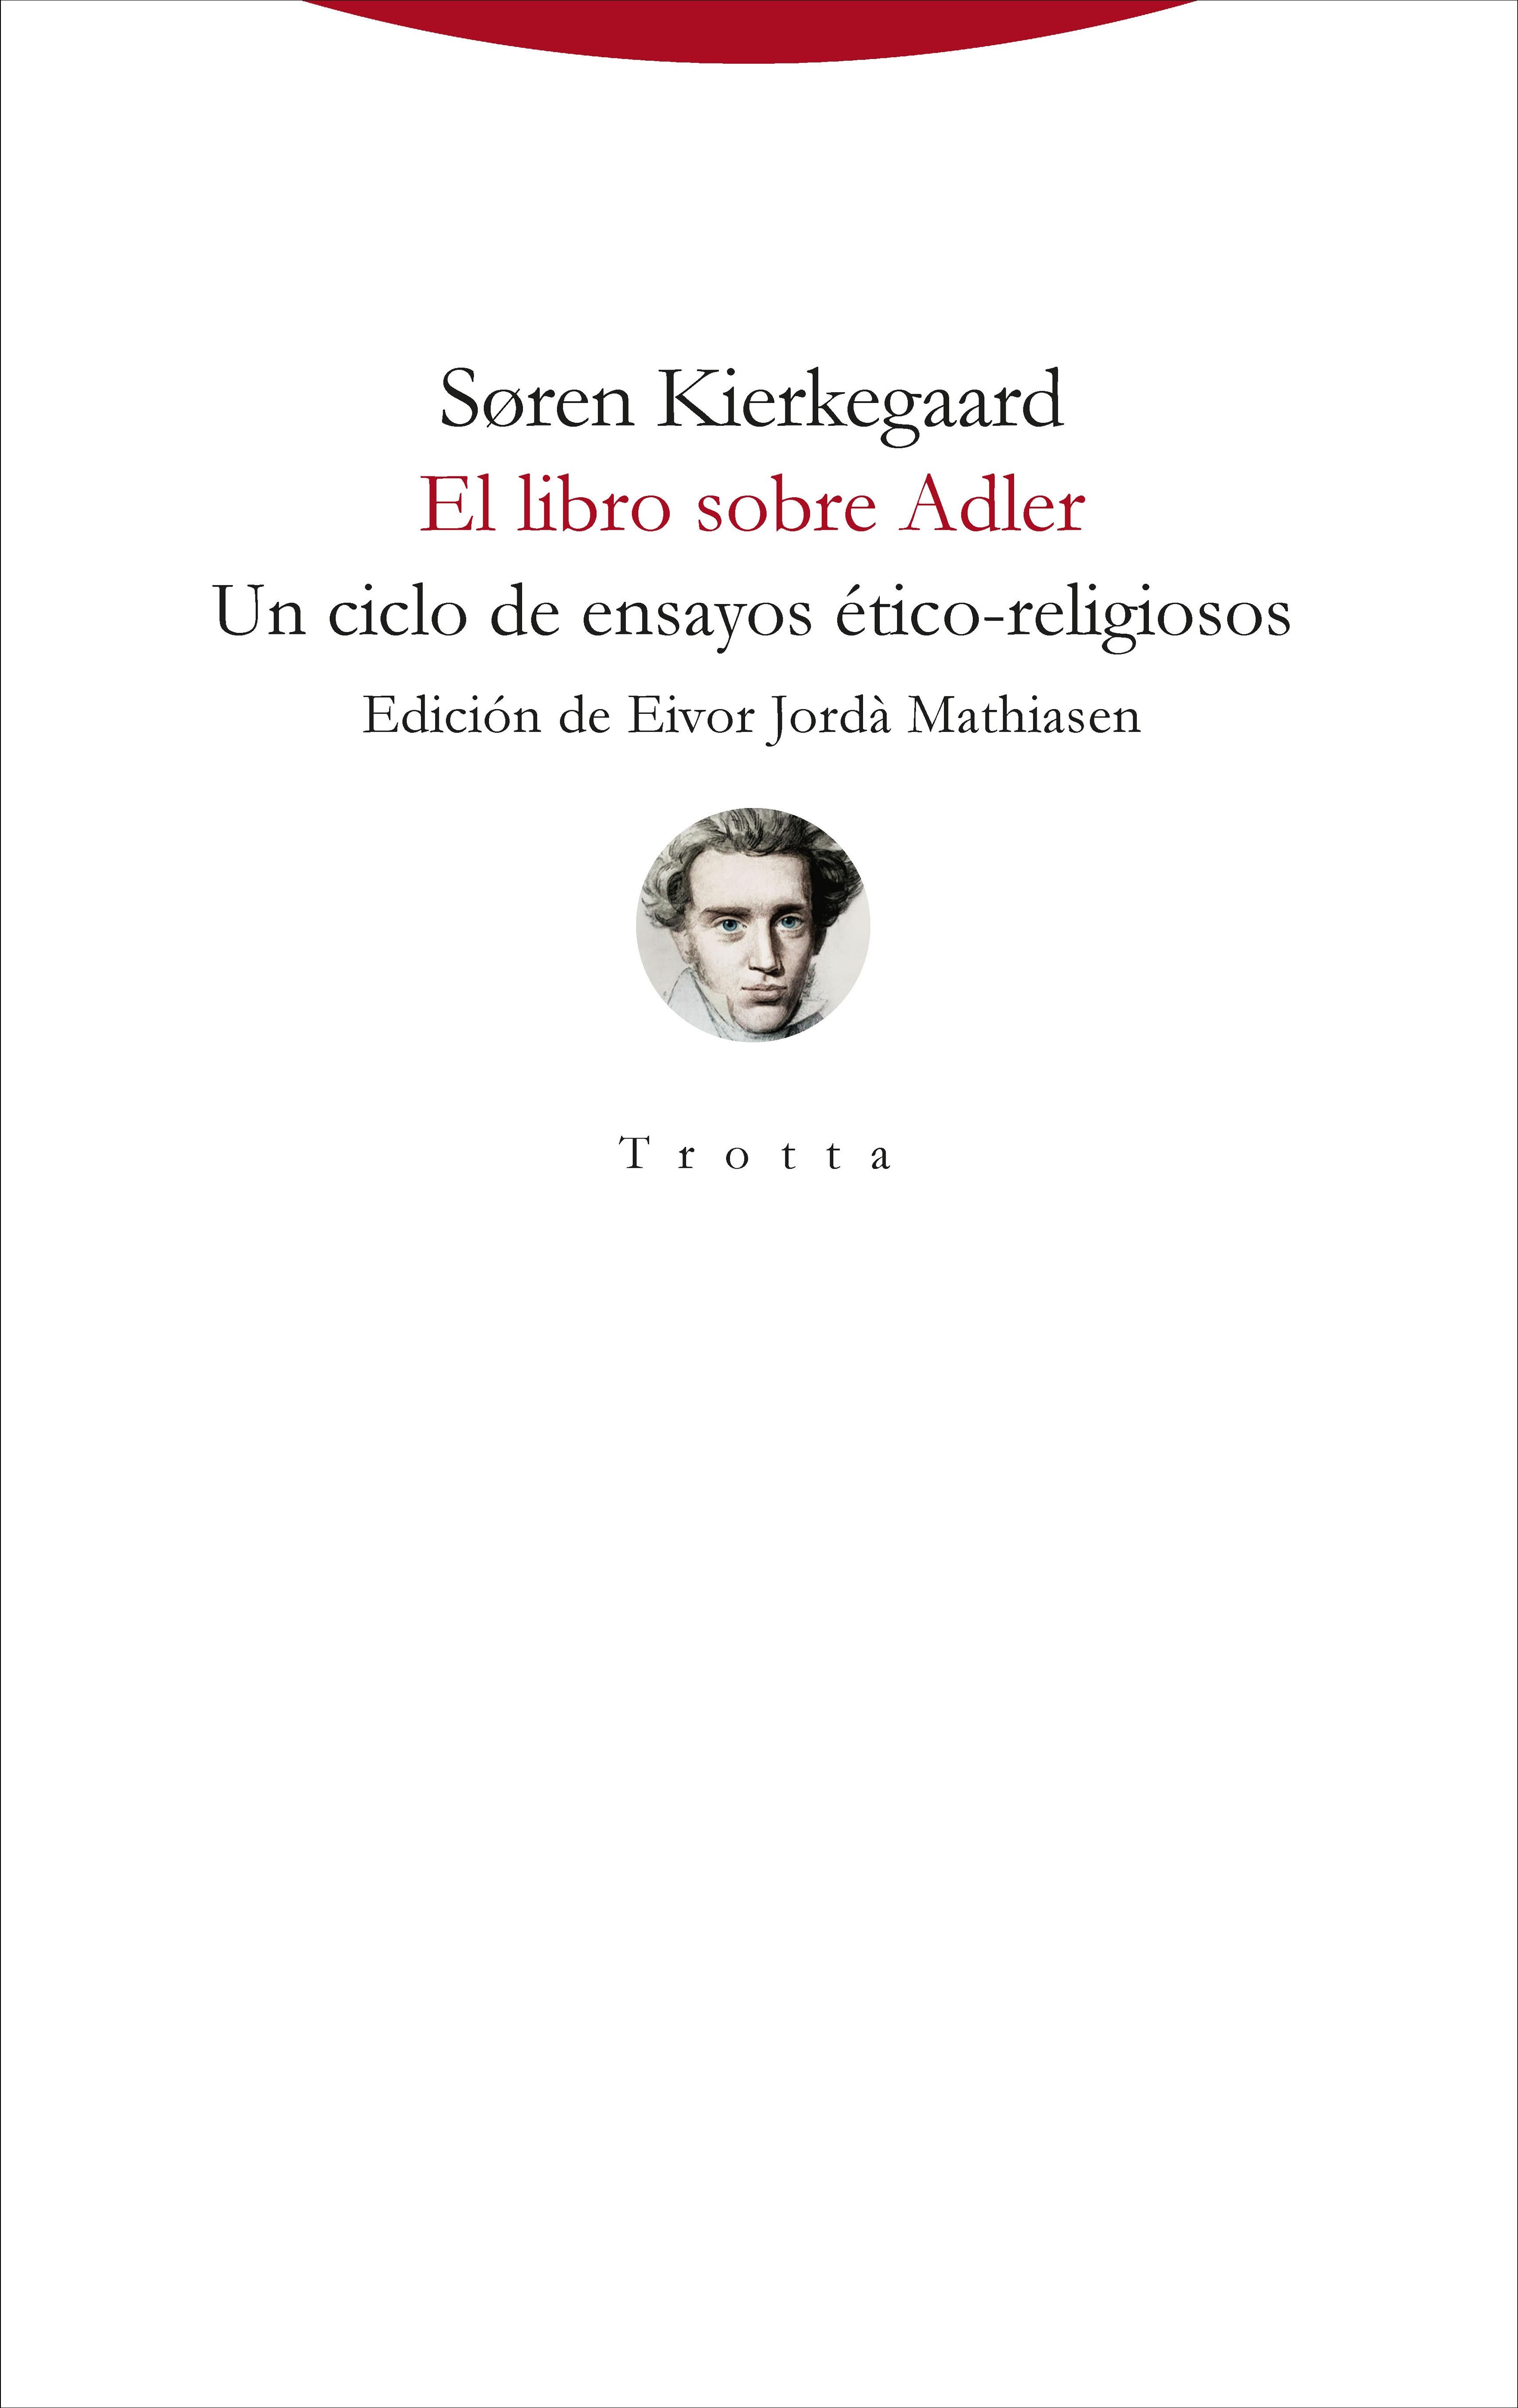 El libro sobre Adler "Un ciclo de ensayos ético-religiosos"